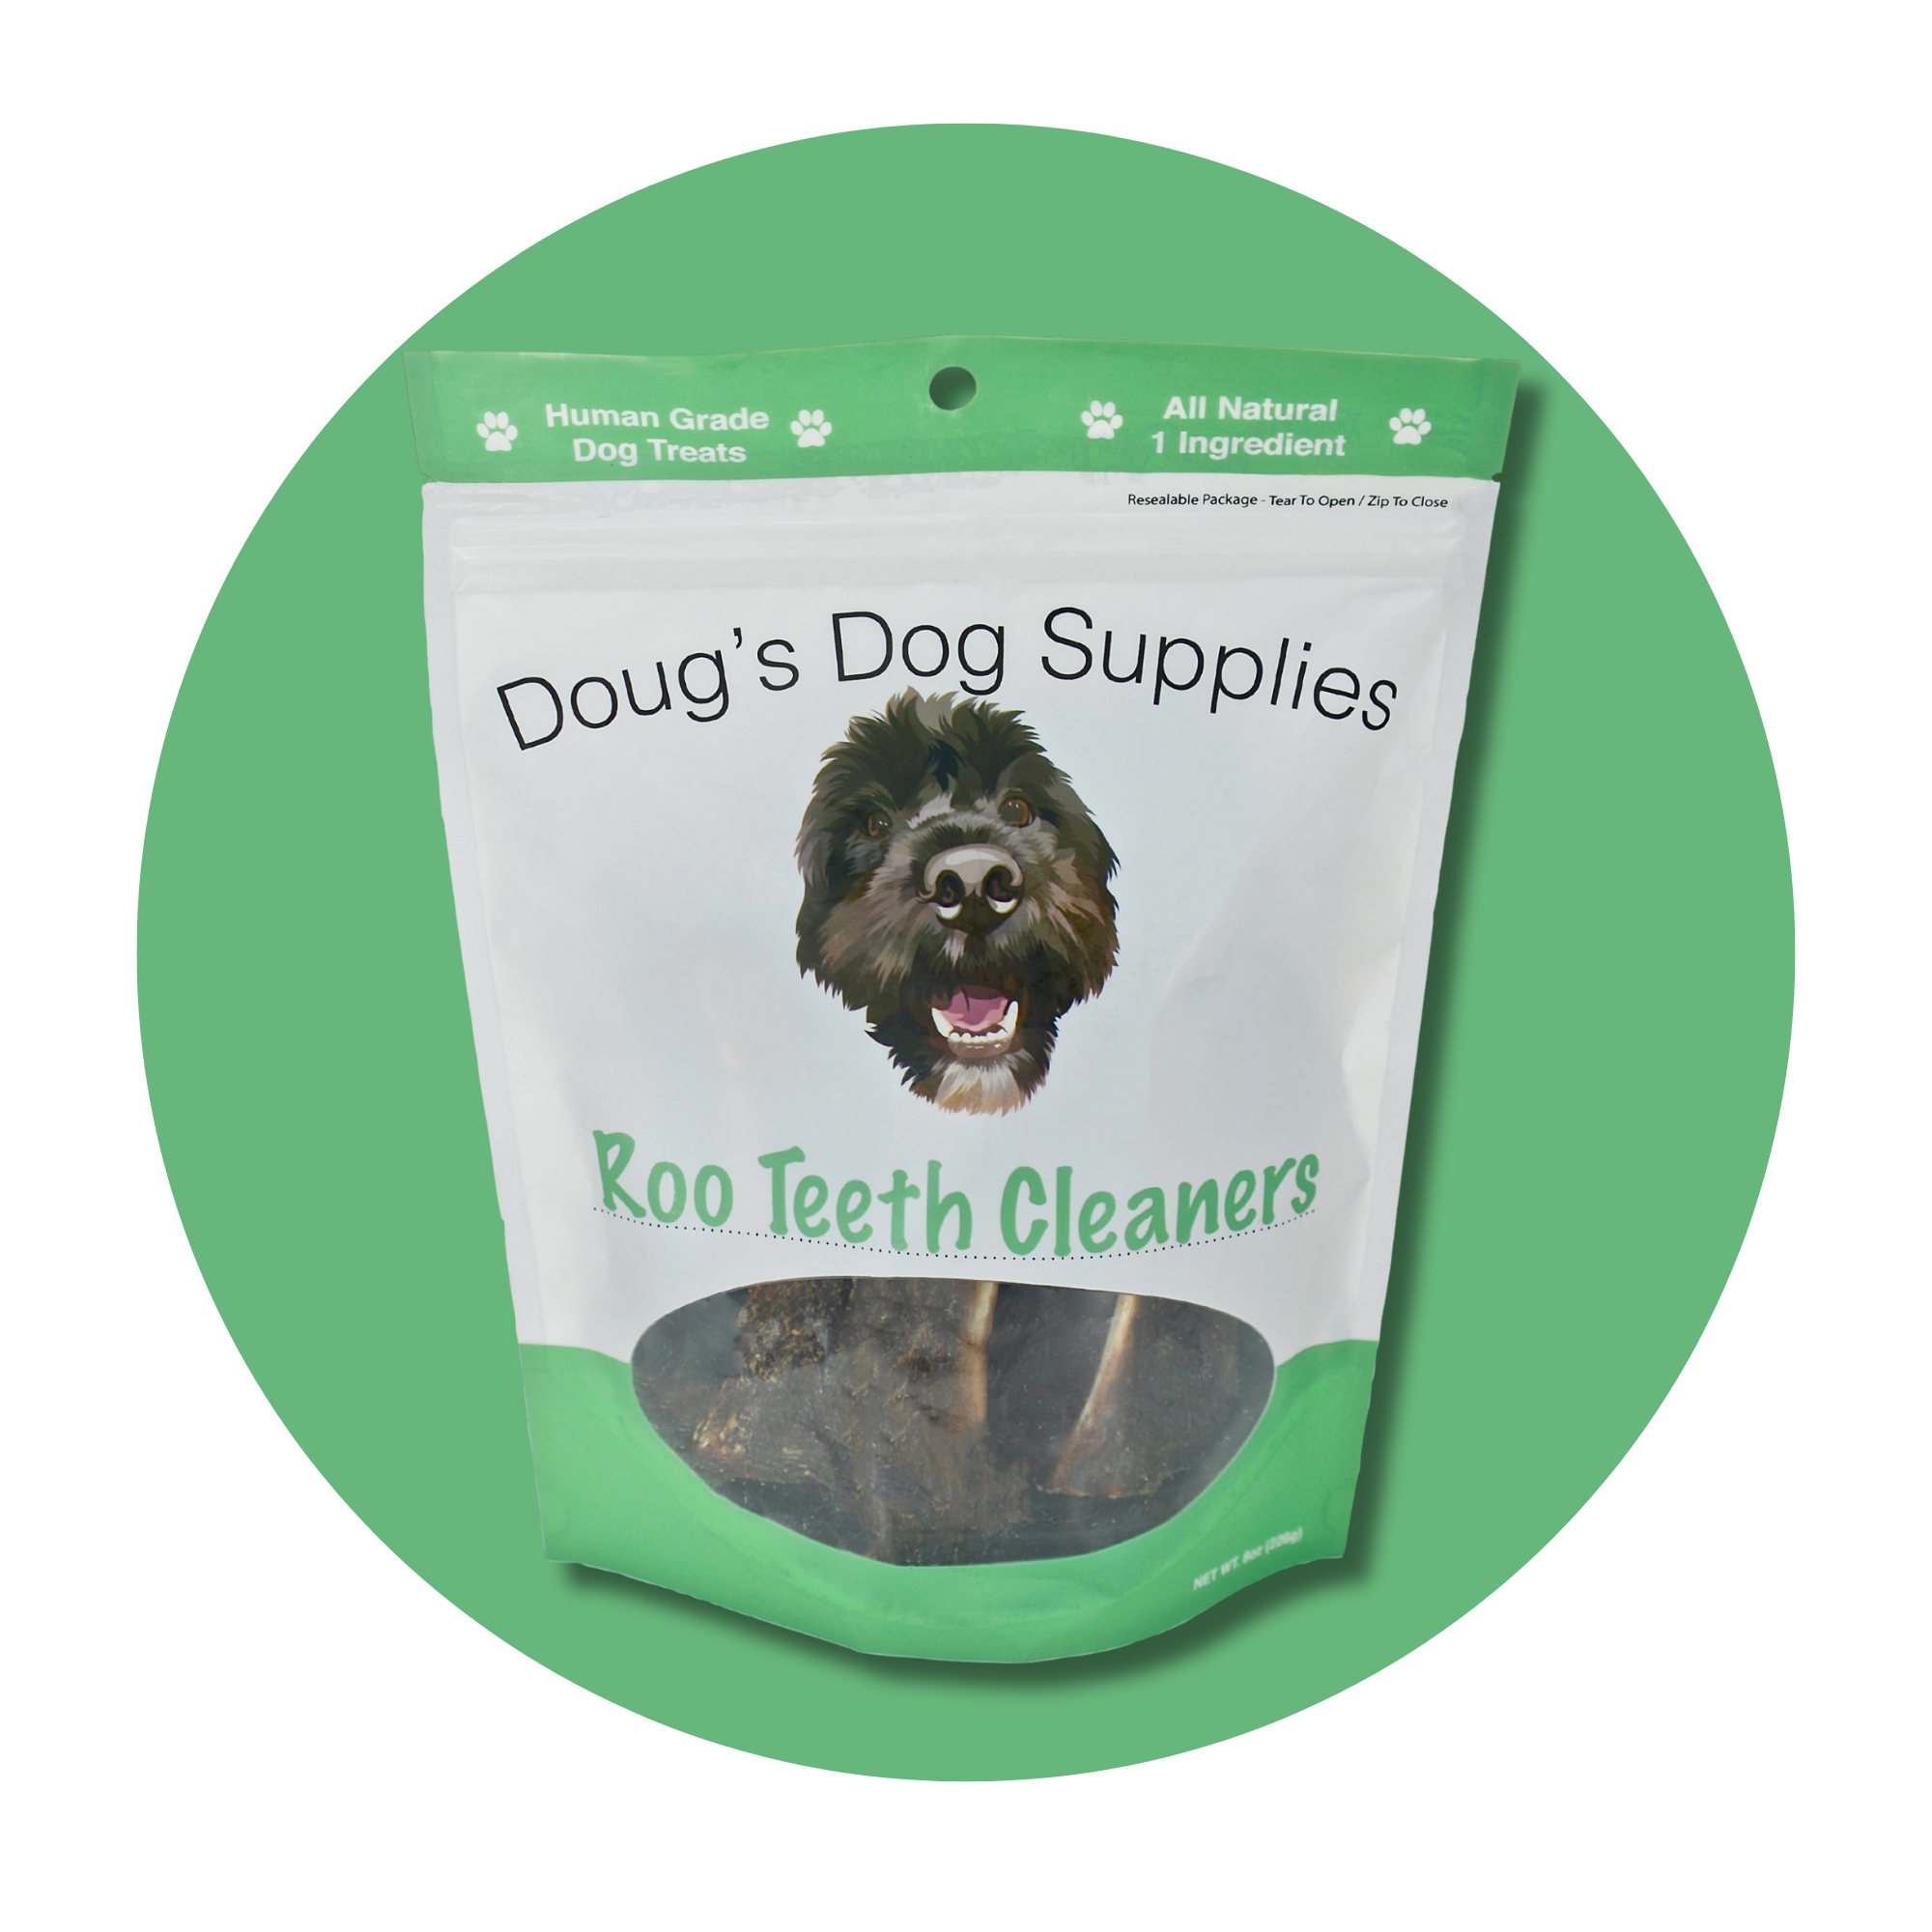 Roo Teeth Cleaners Doug's Dog Supplies